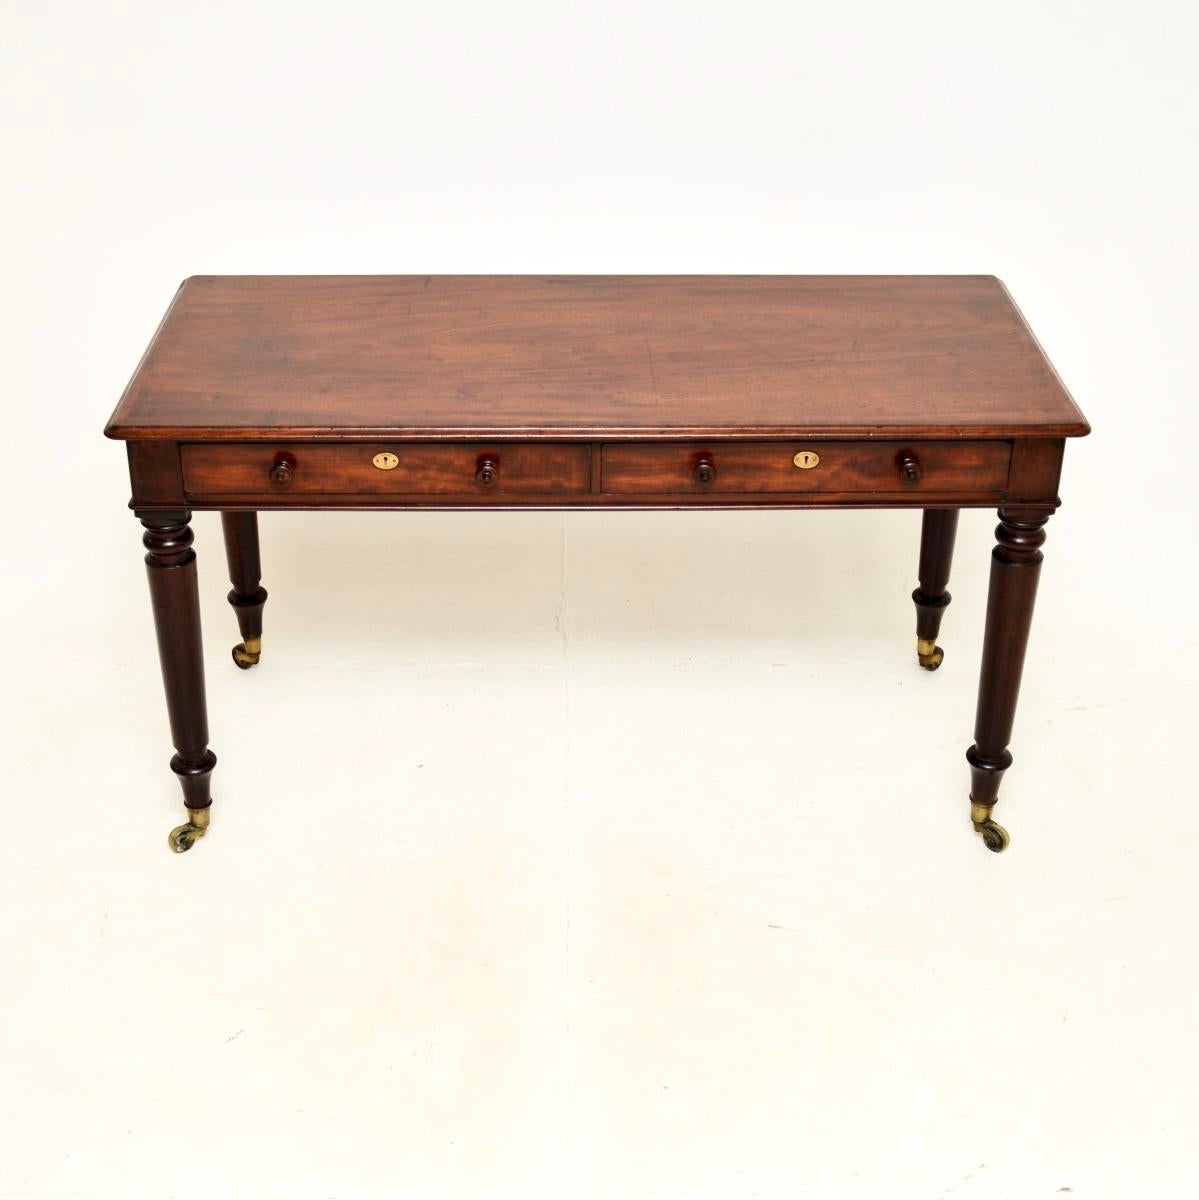 Une fantastique table à écrire / bureau géorgien antique de la plus haute qualité. Il a été fabriqué en Angleterre, il date des années 1820 environ.

Il est d'une qualité exceptionnelle, le plateau est bordé de bandes transversales, il repose sur